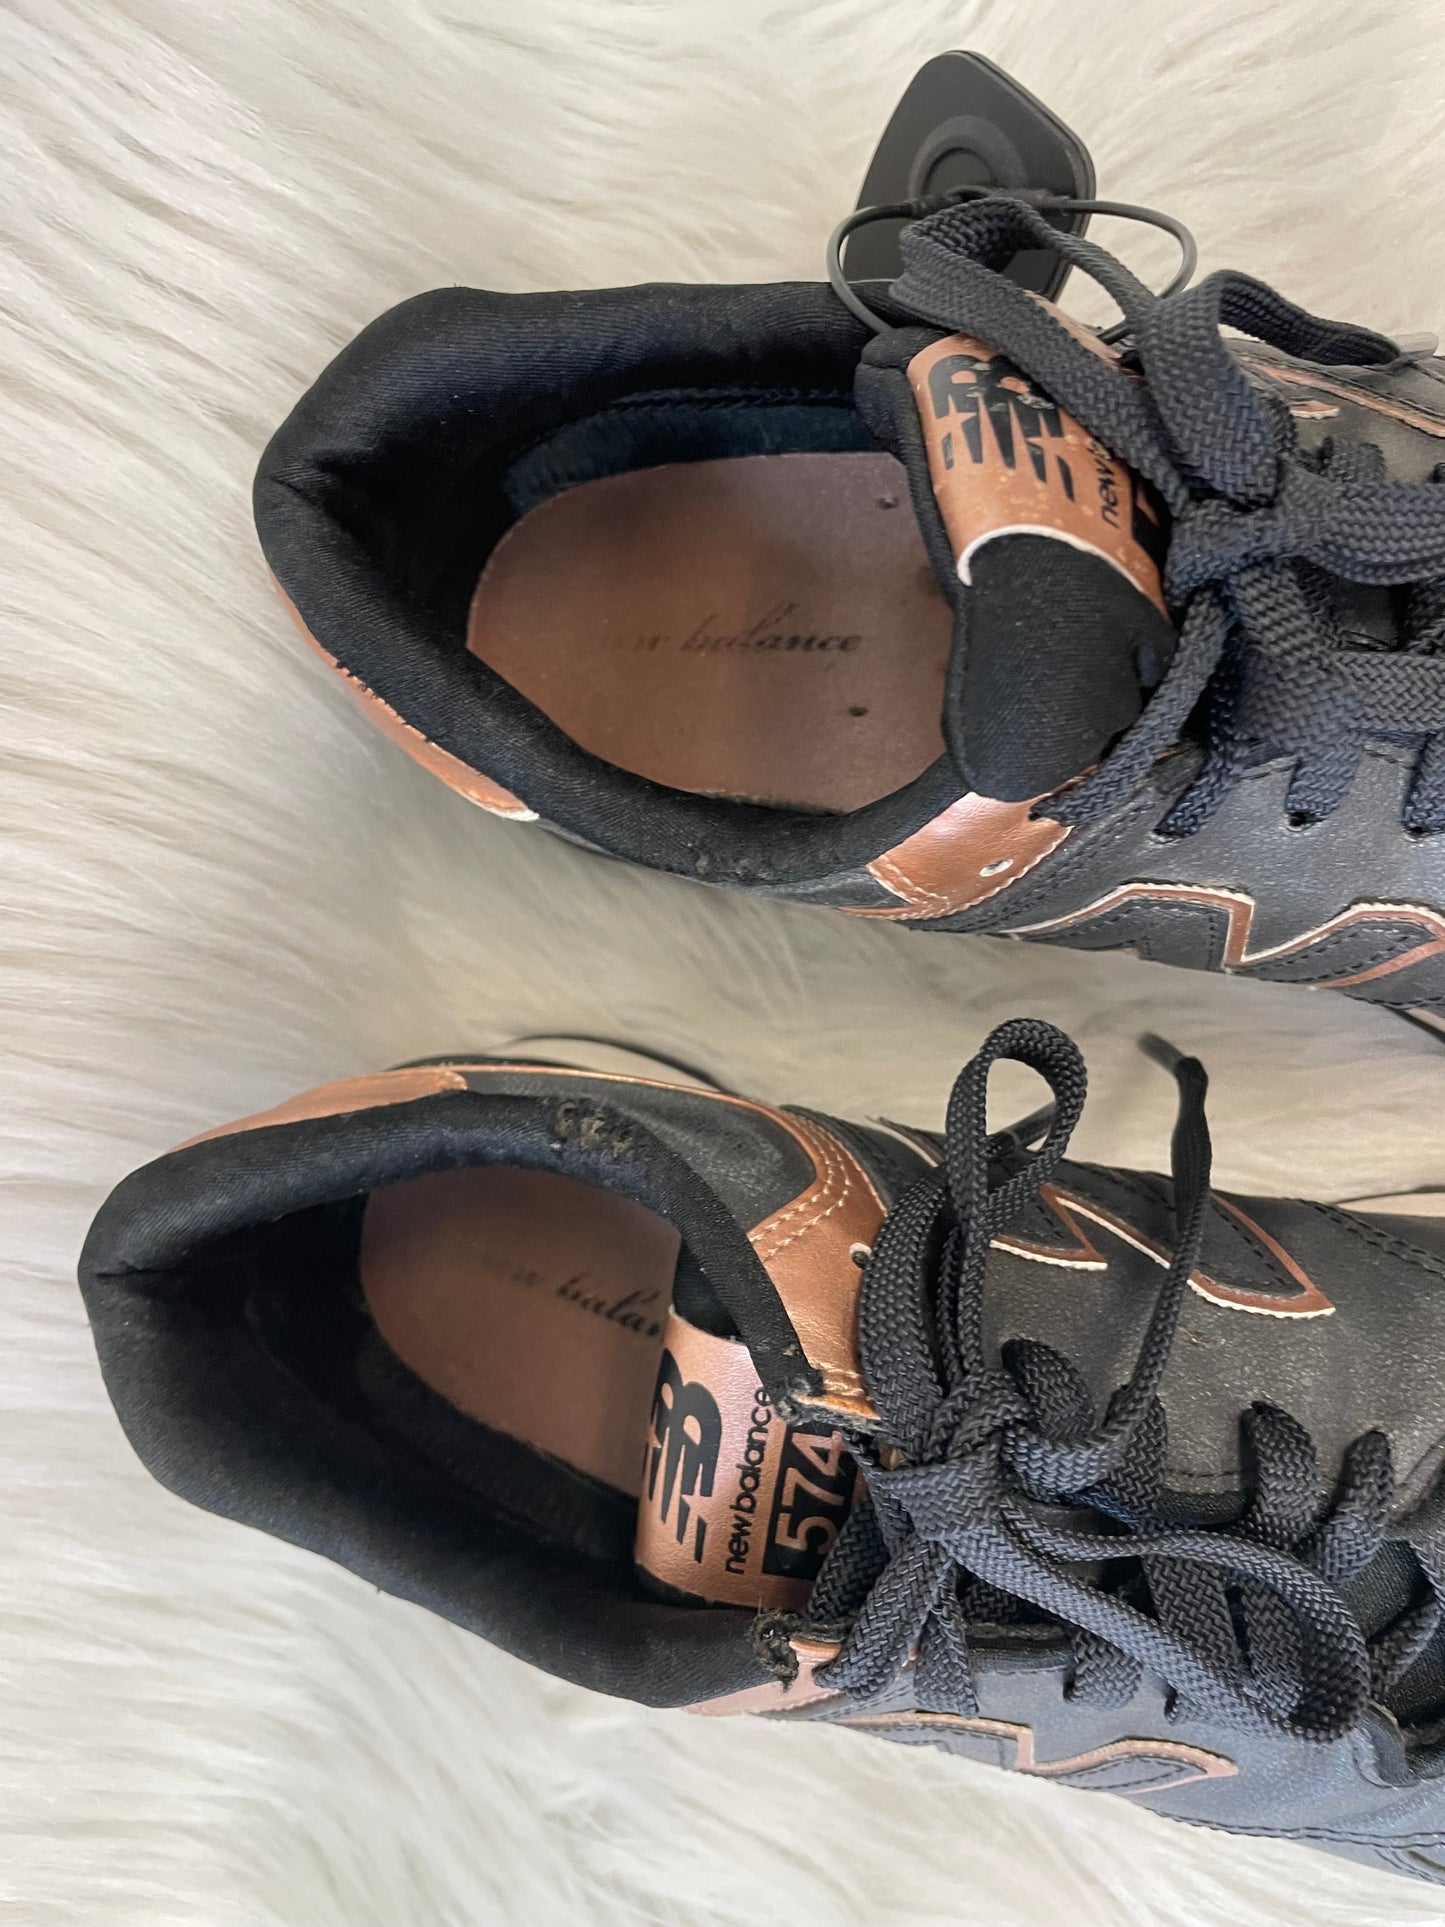 Black Shoes Athletic New Balance, Size 8.5